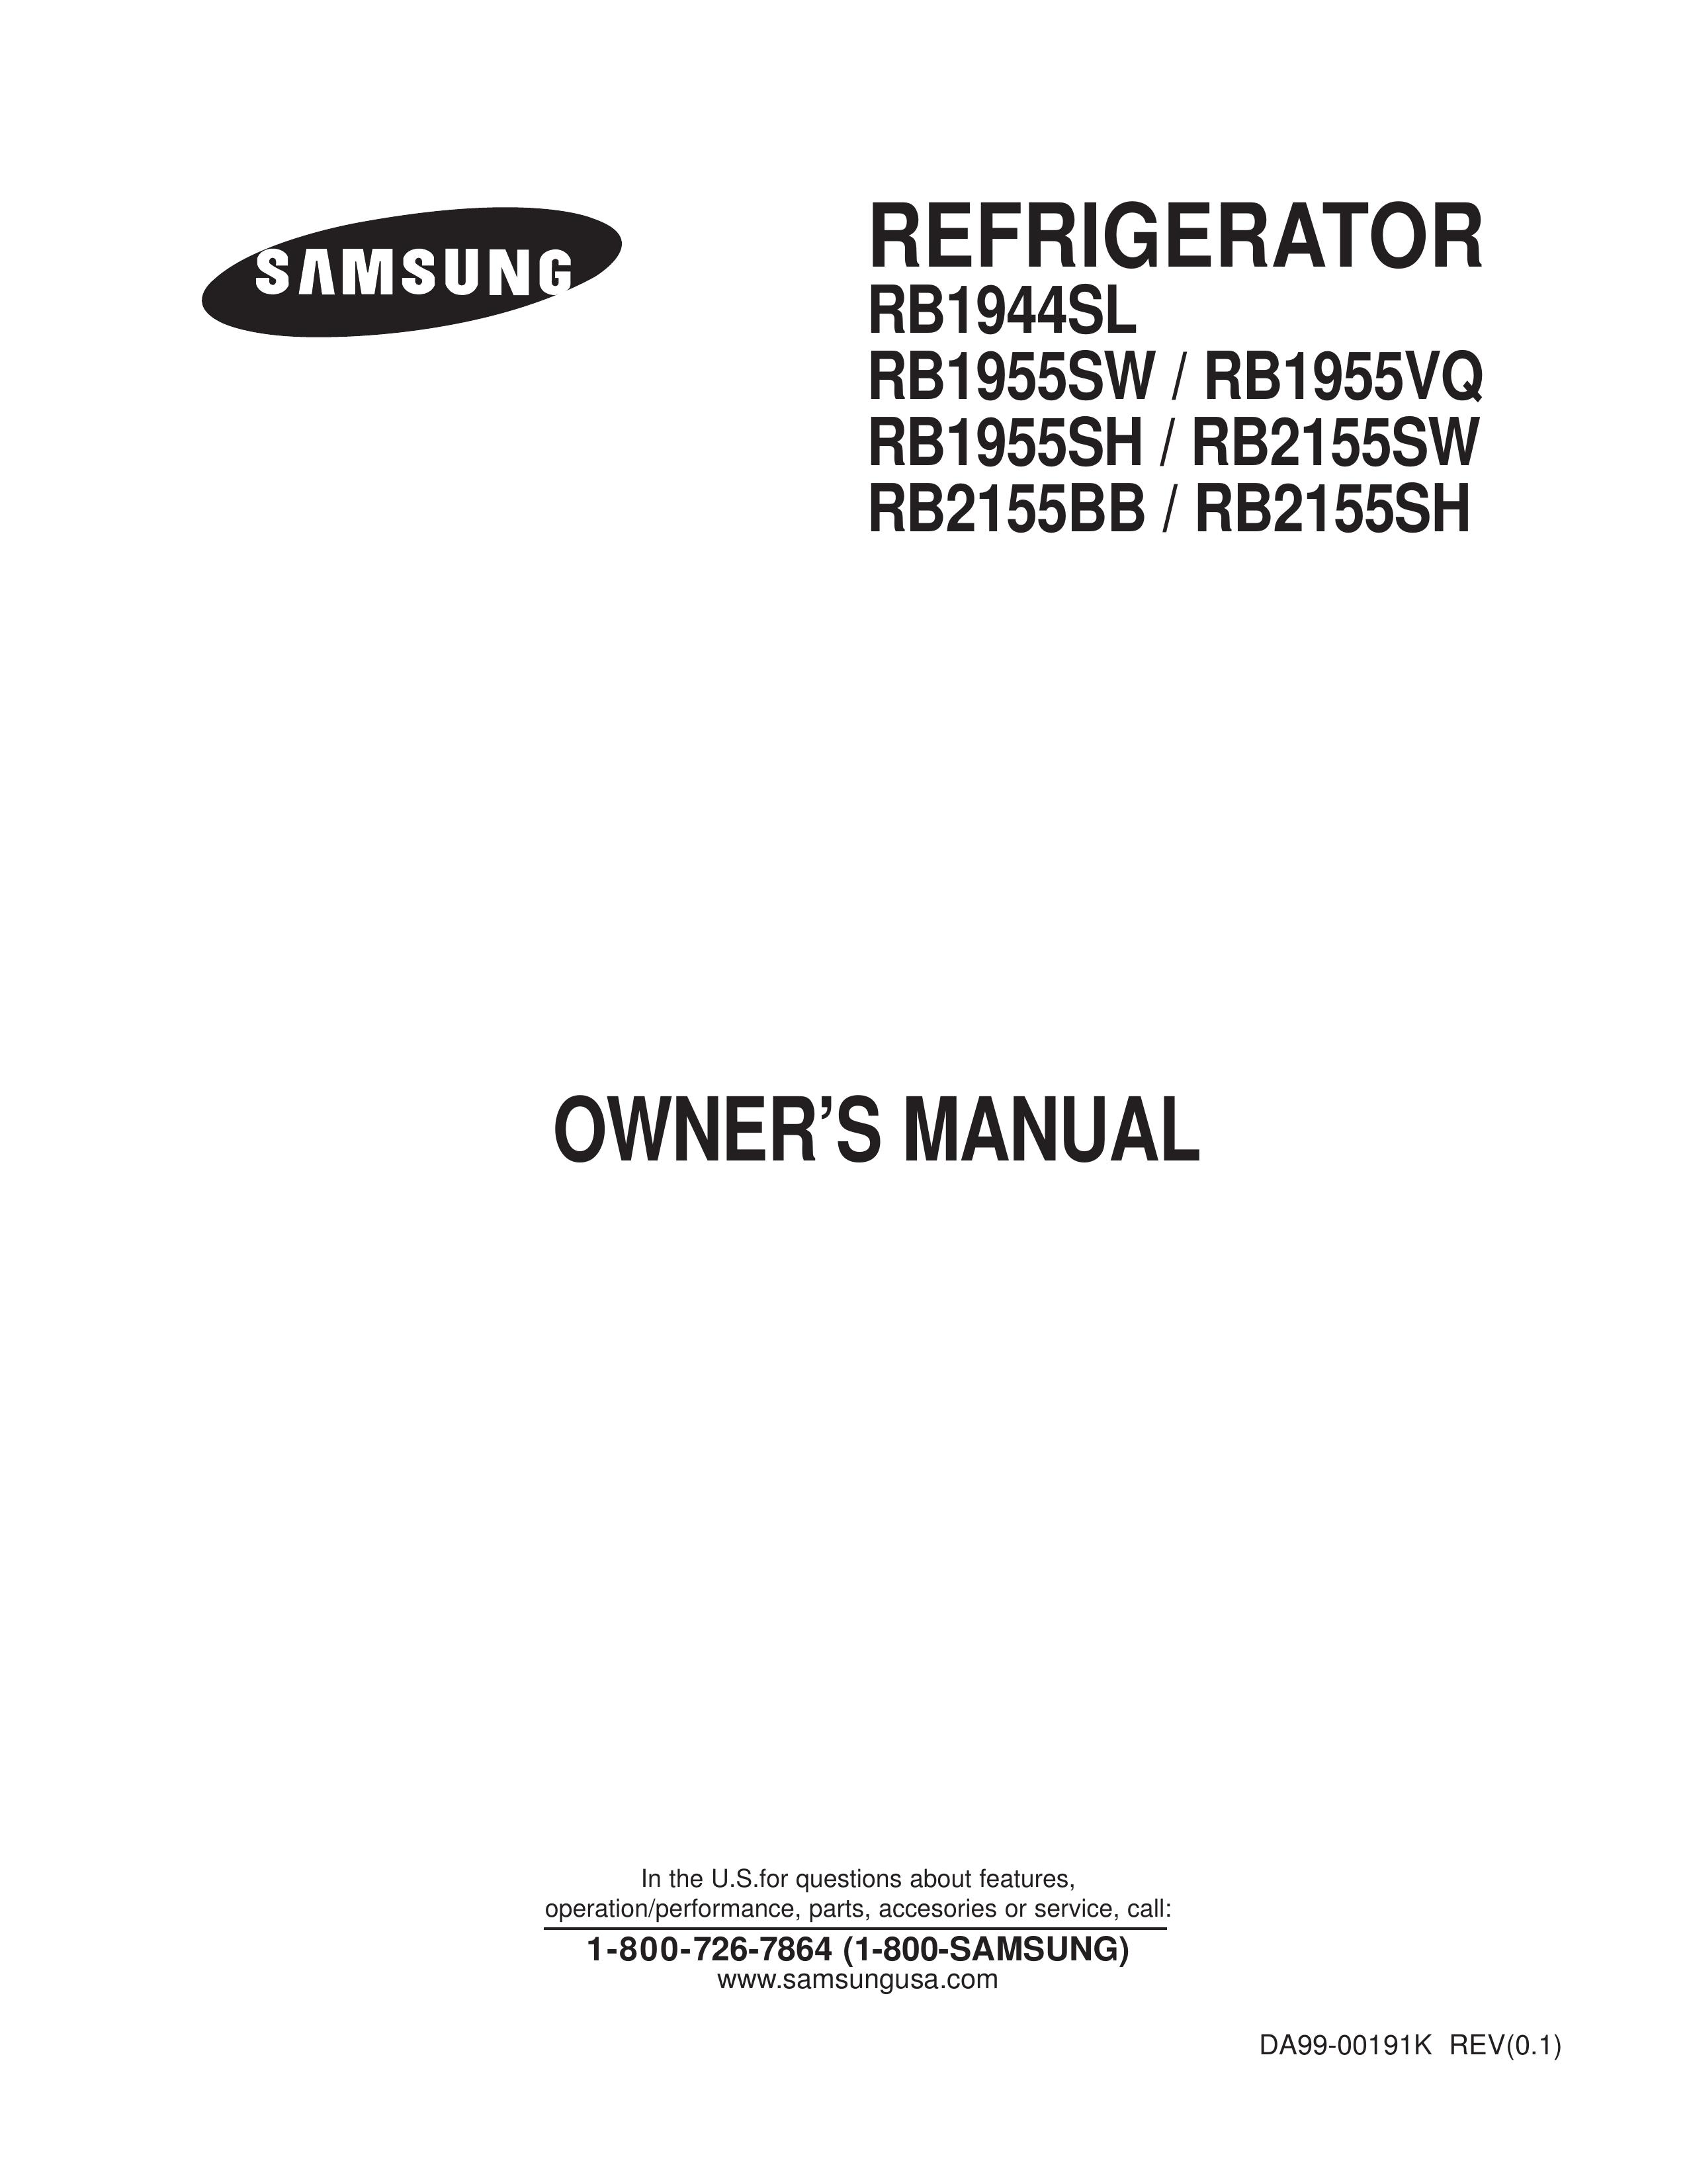 Samsung RB1944SL Refrigerator User Manual